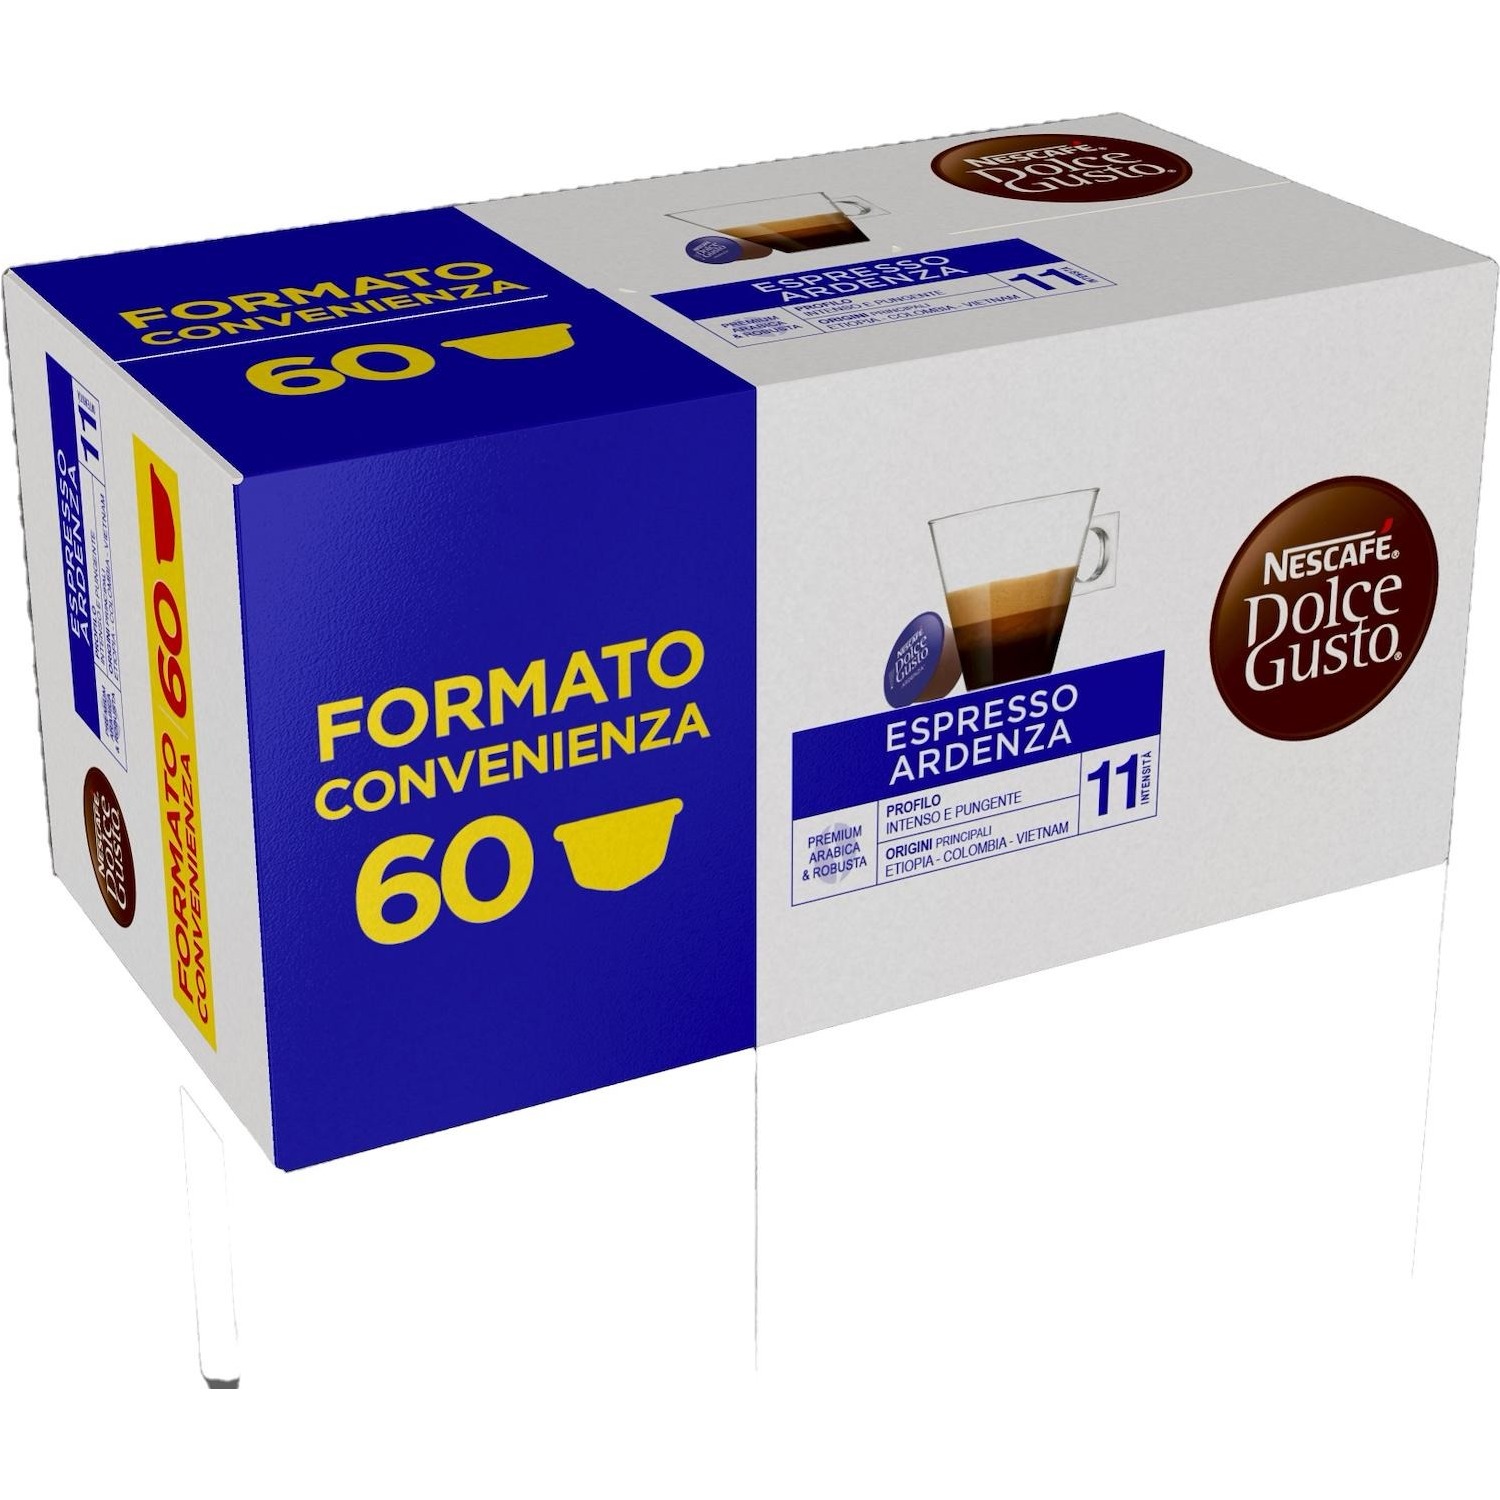 Immagine per Capsule Caffe' Dolce Gusto Espresso Aredenza 60 capsule da DIMOStore